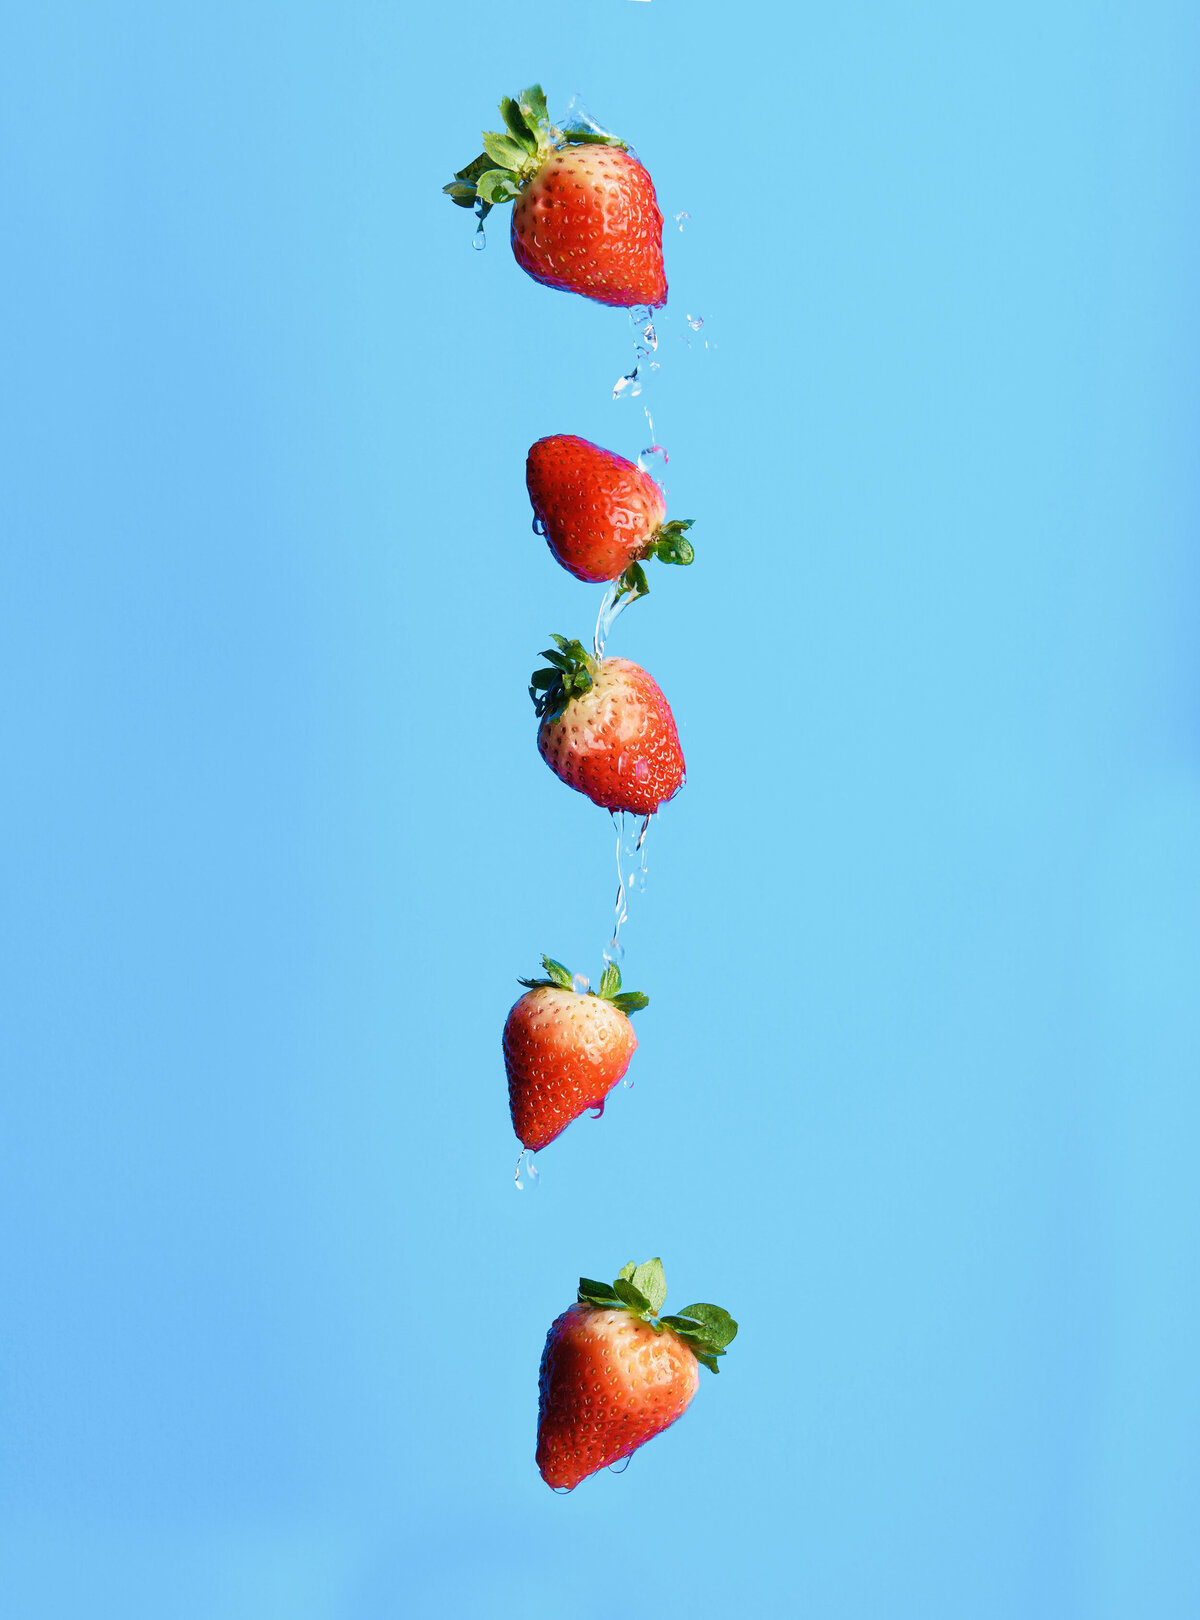 strawberries-2